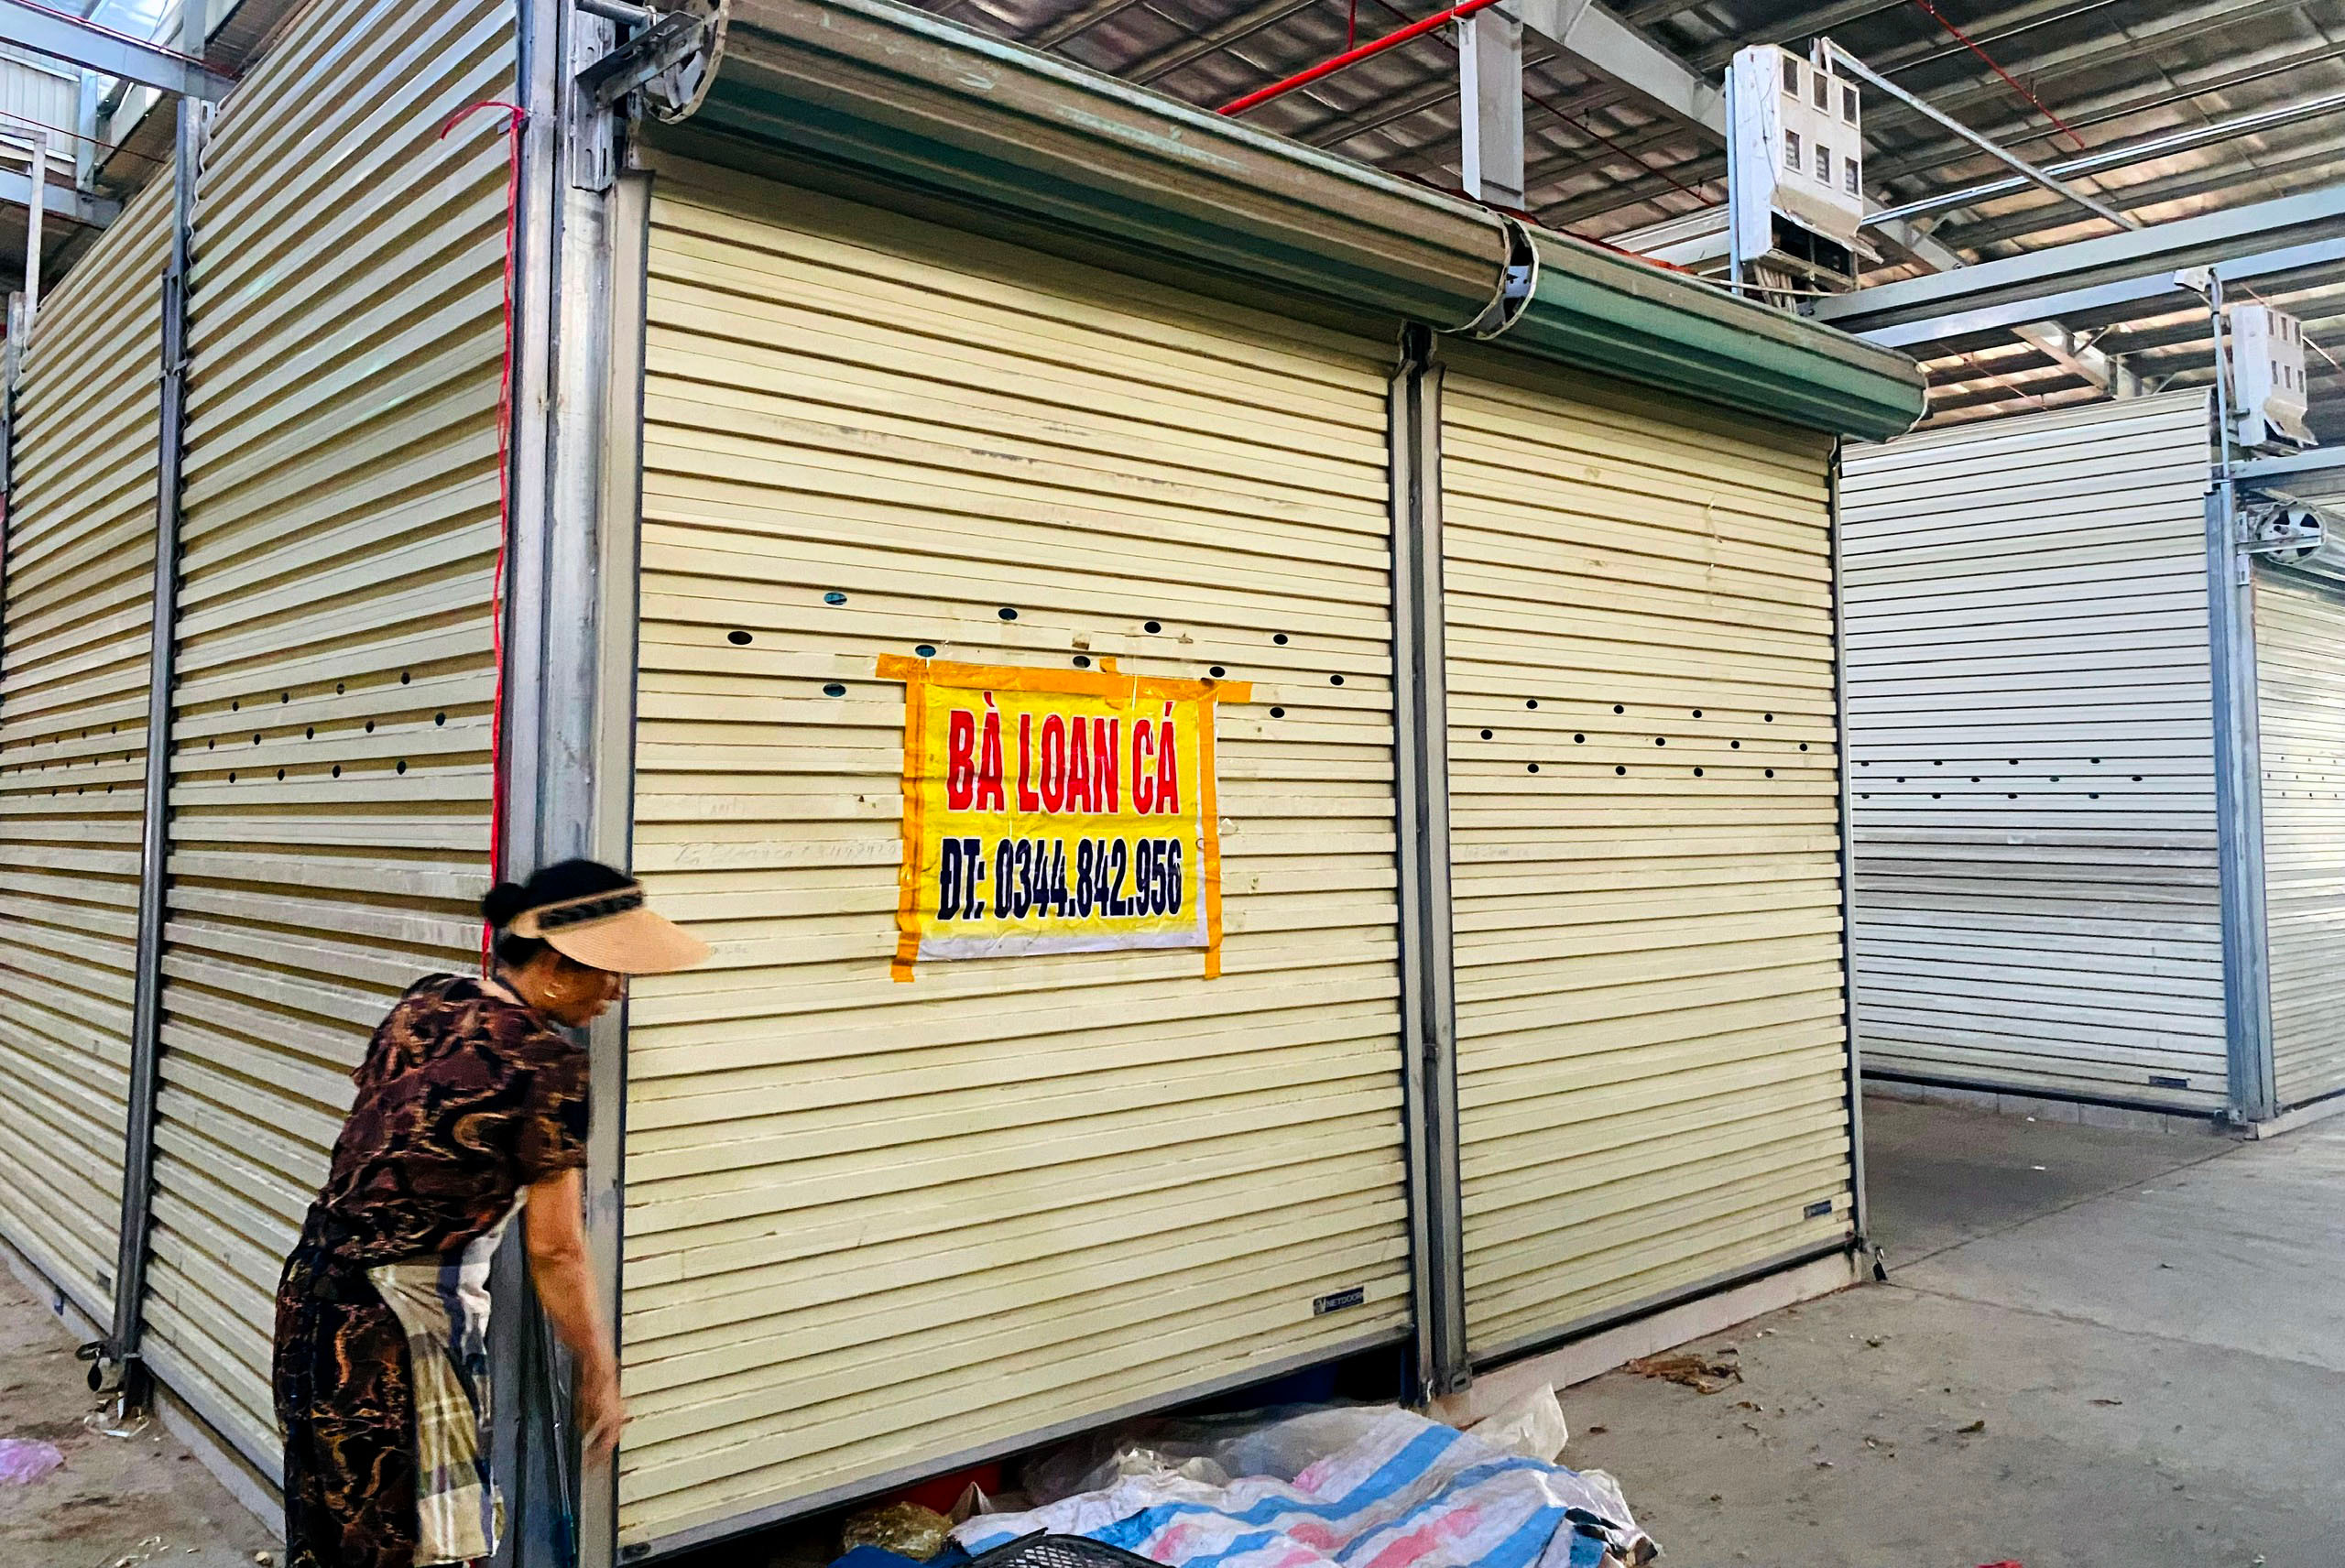 bna_Buôn bán ế ẩm tiểu thương chợ Đô Lương phải đóng cửa hàng ảnh QA.jpg